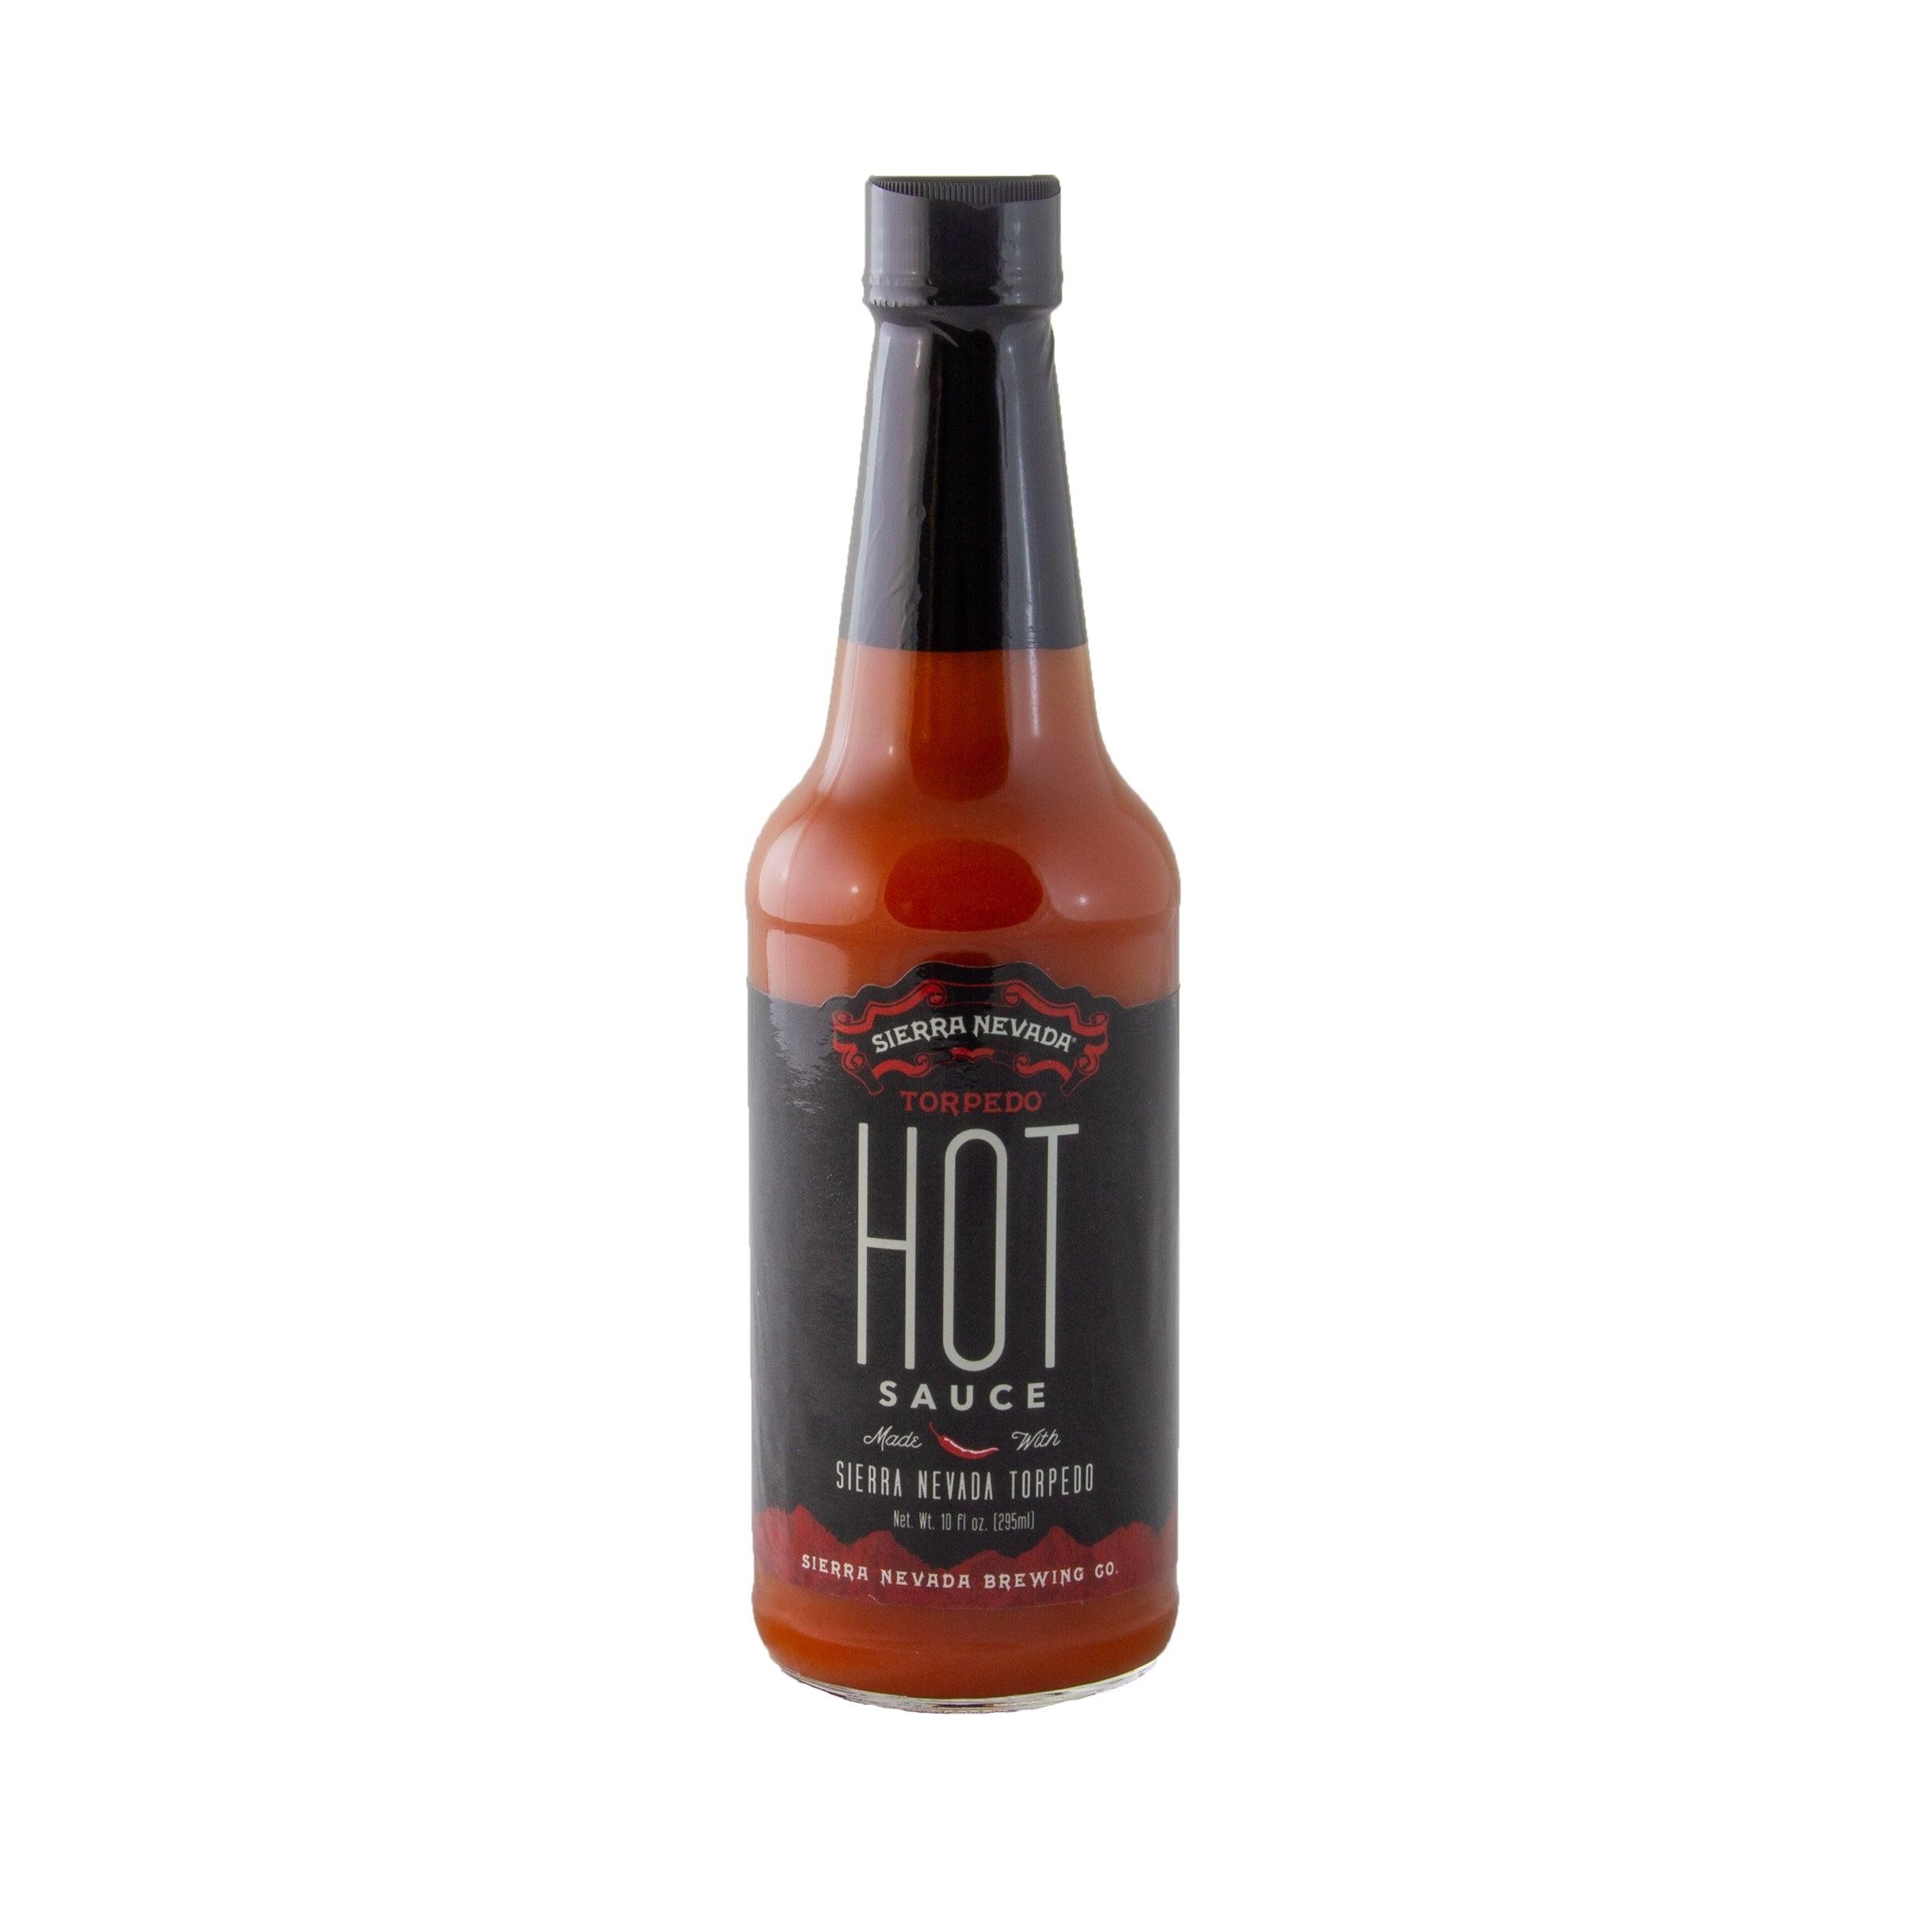 SN Torpedo Hot Sauce